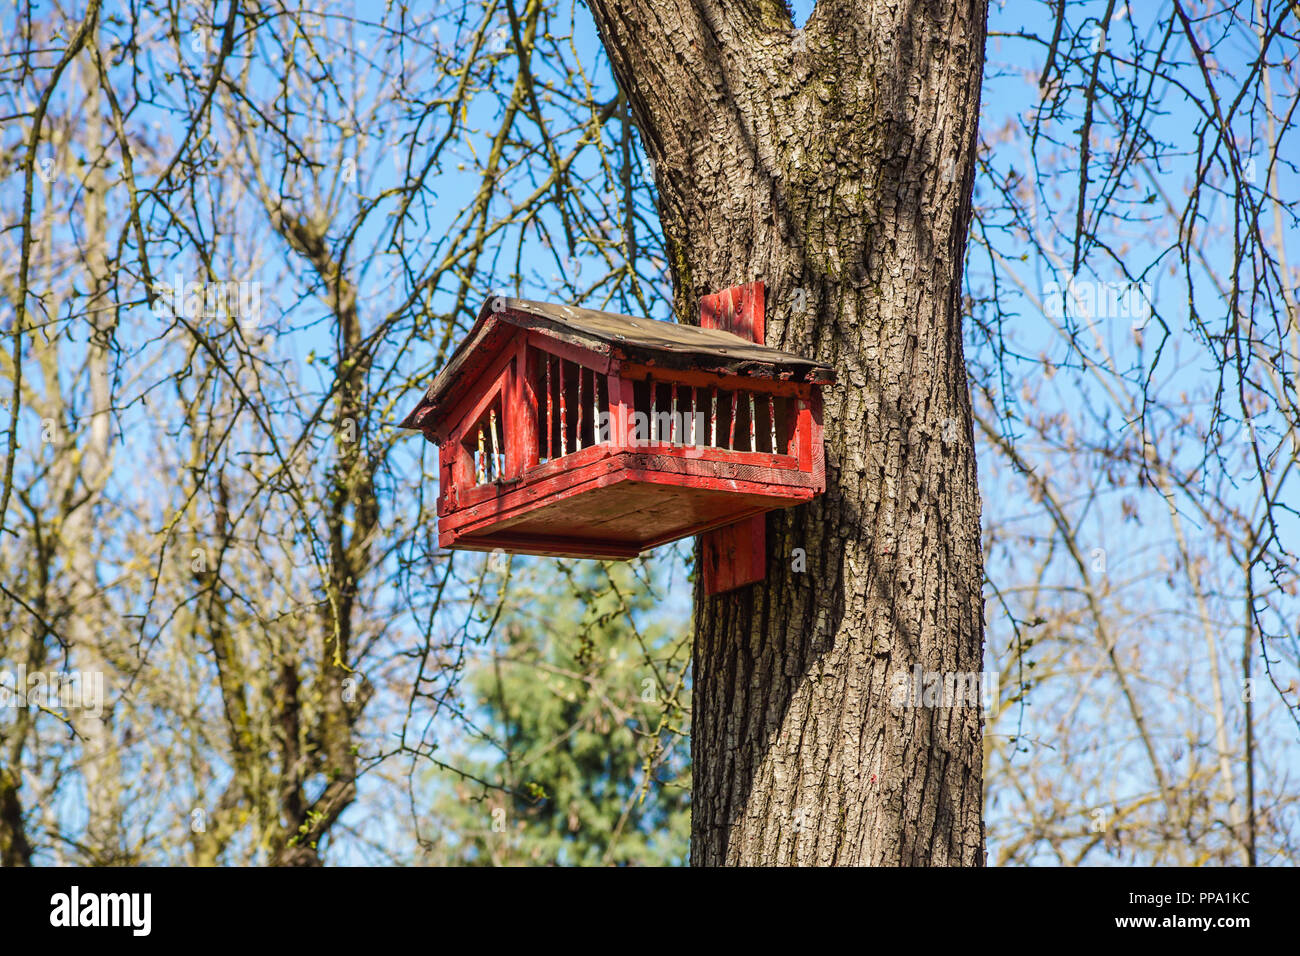 Maison d'écureuil en bois coloré, nid de l'Écureuil Photo Stock